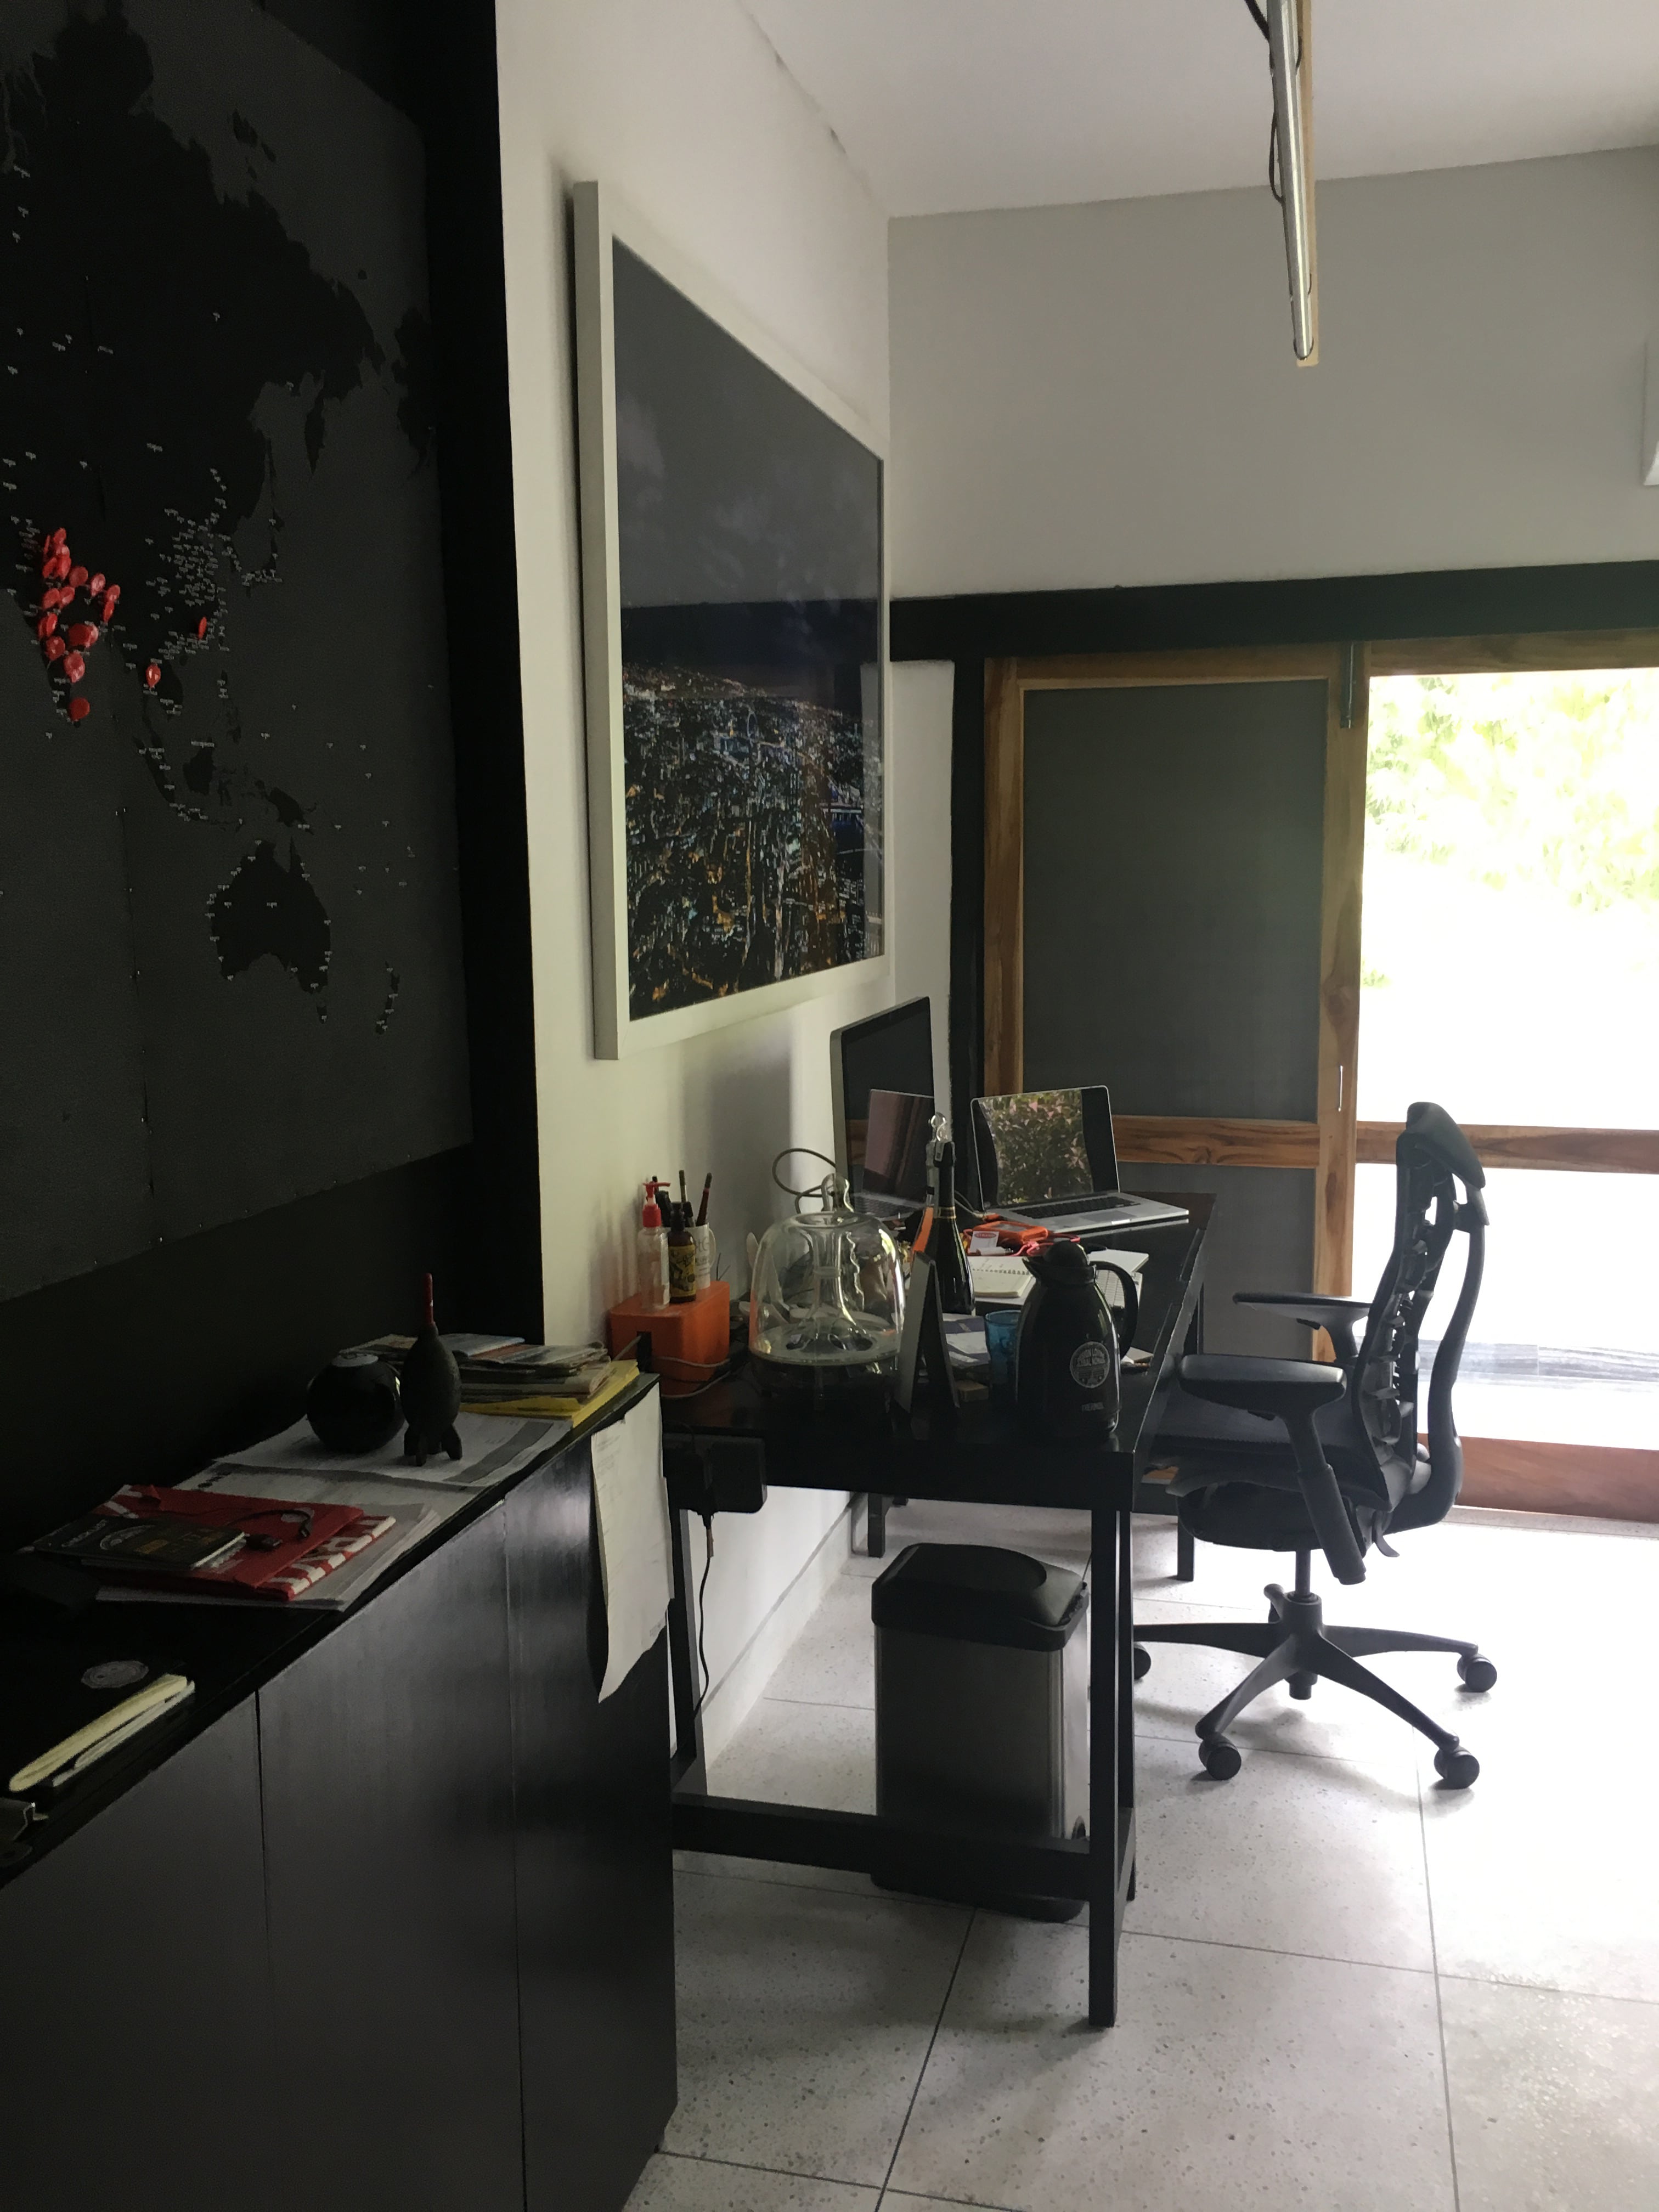 Pushkar's workspace